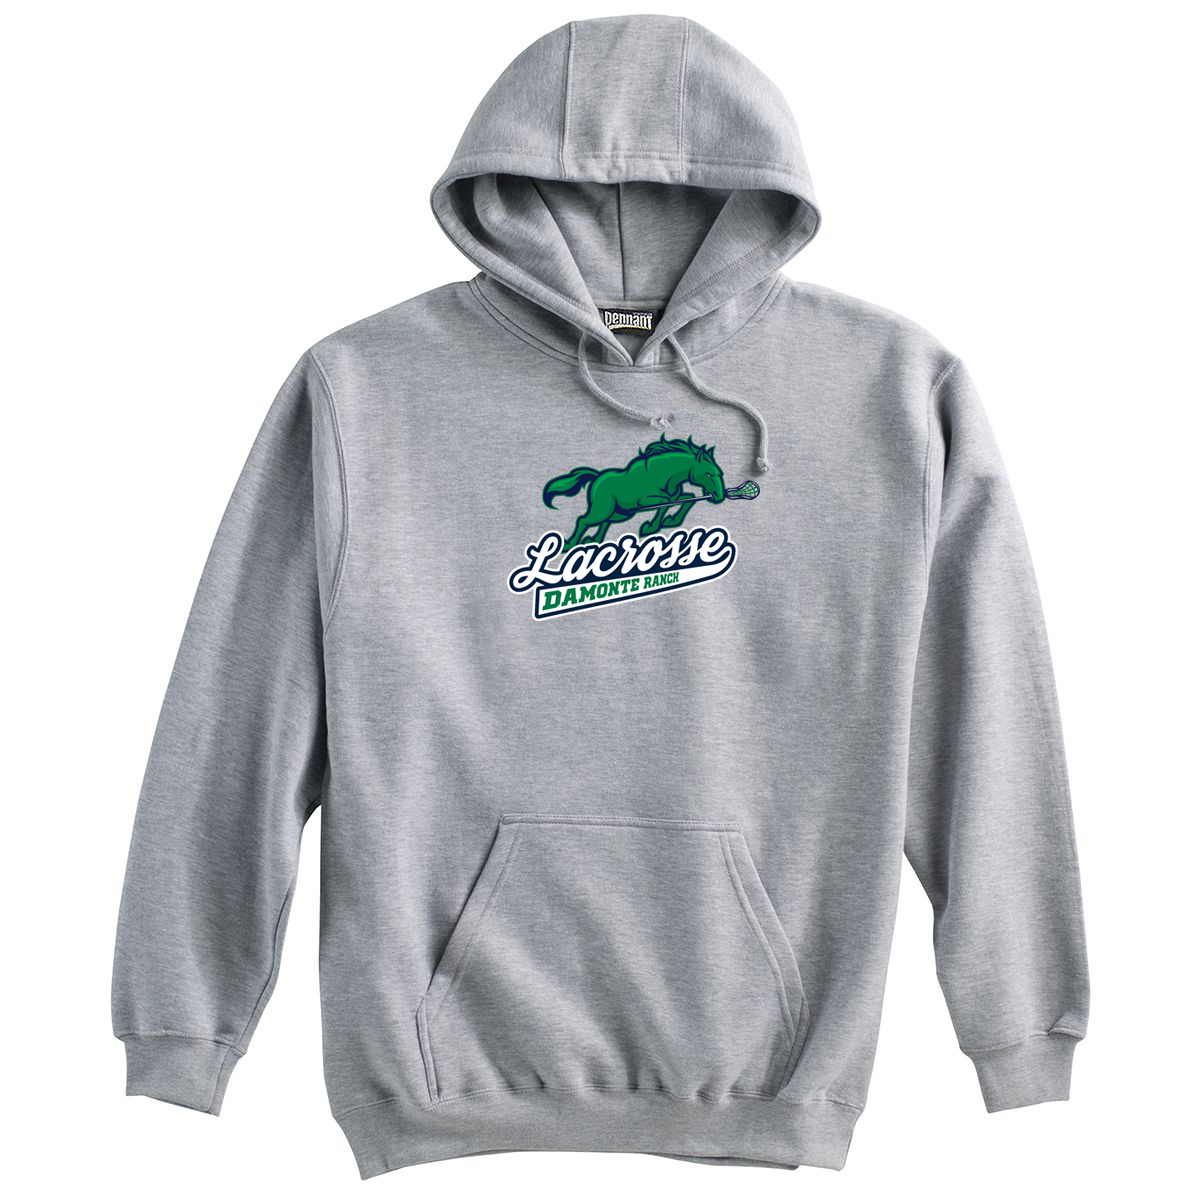 Damonte Ranch Lacrosse Sweatshirt